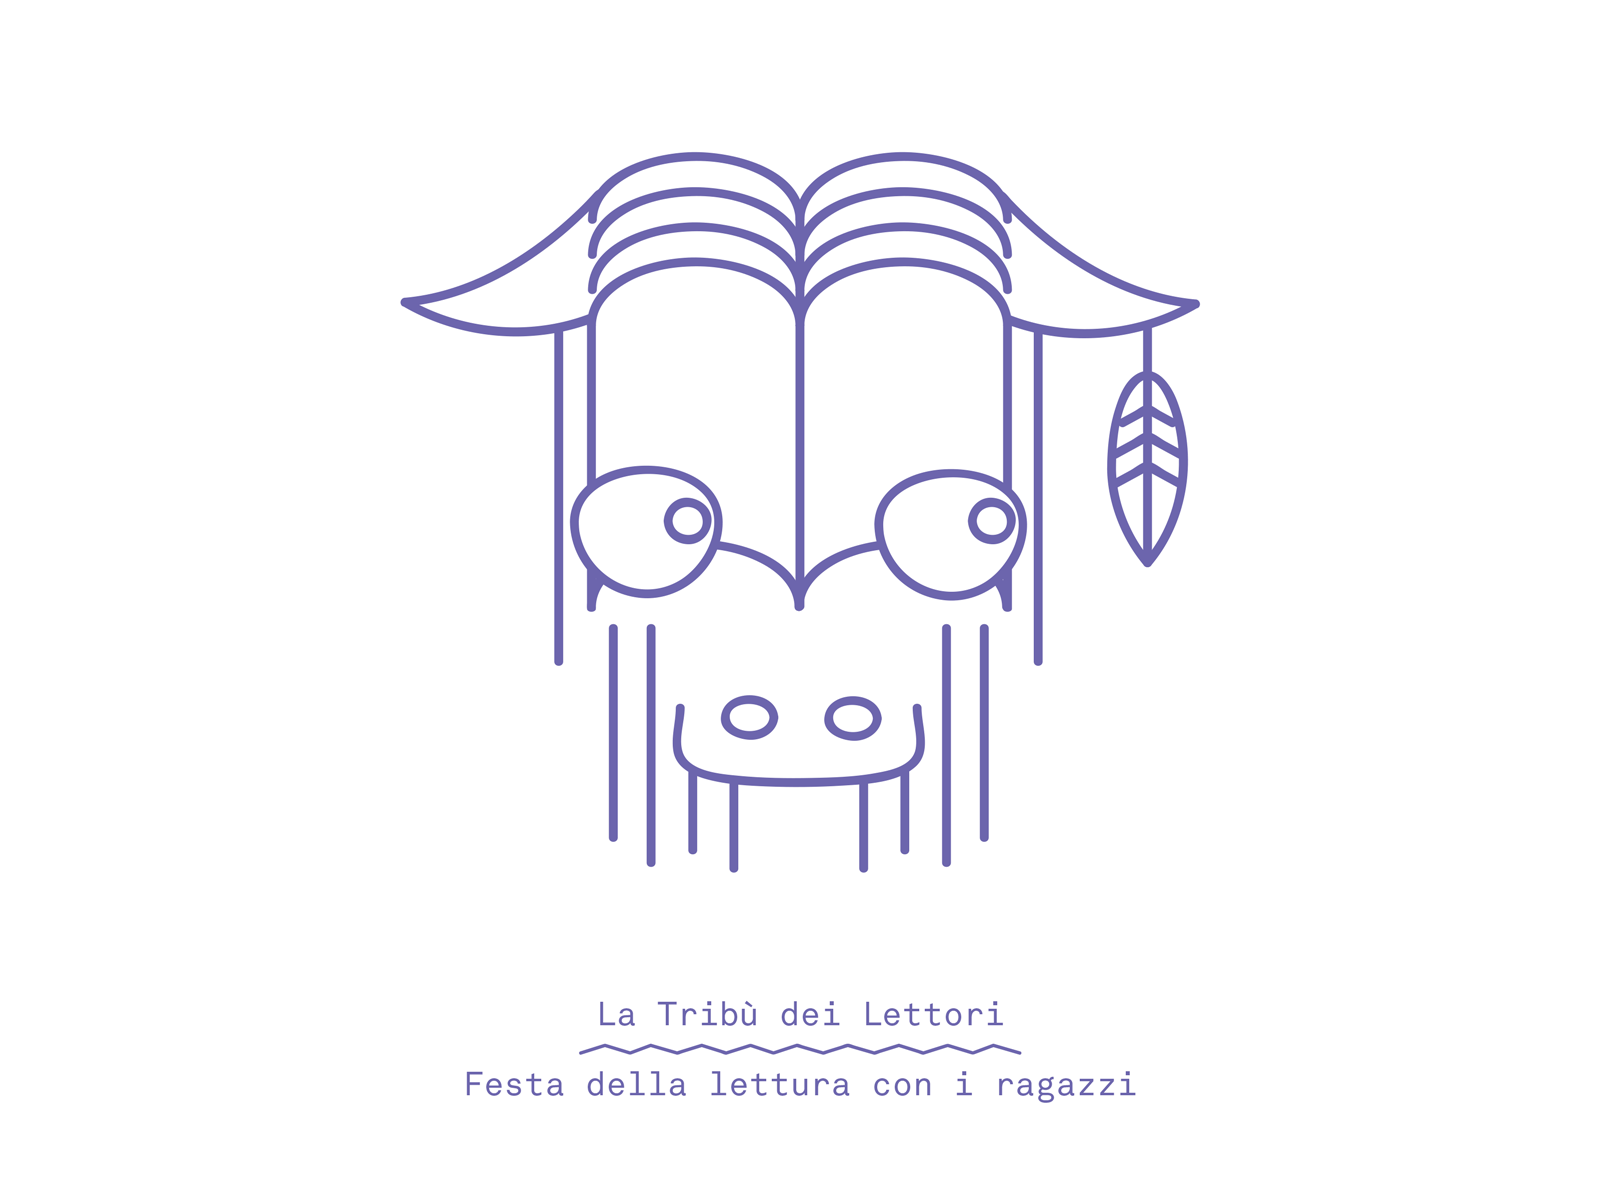 La tribù dei lettori branding design grafica graphic graphic design identity illustration logo